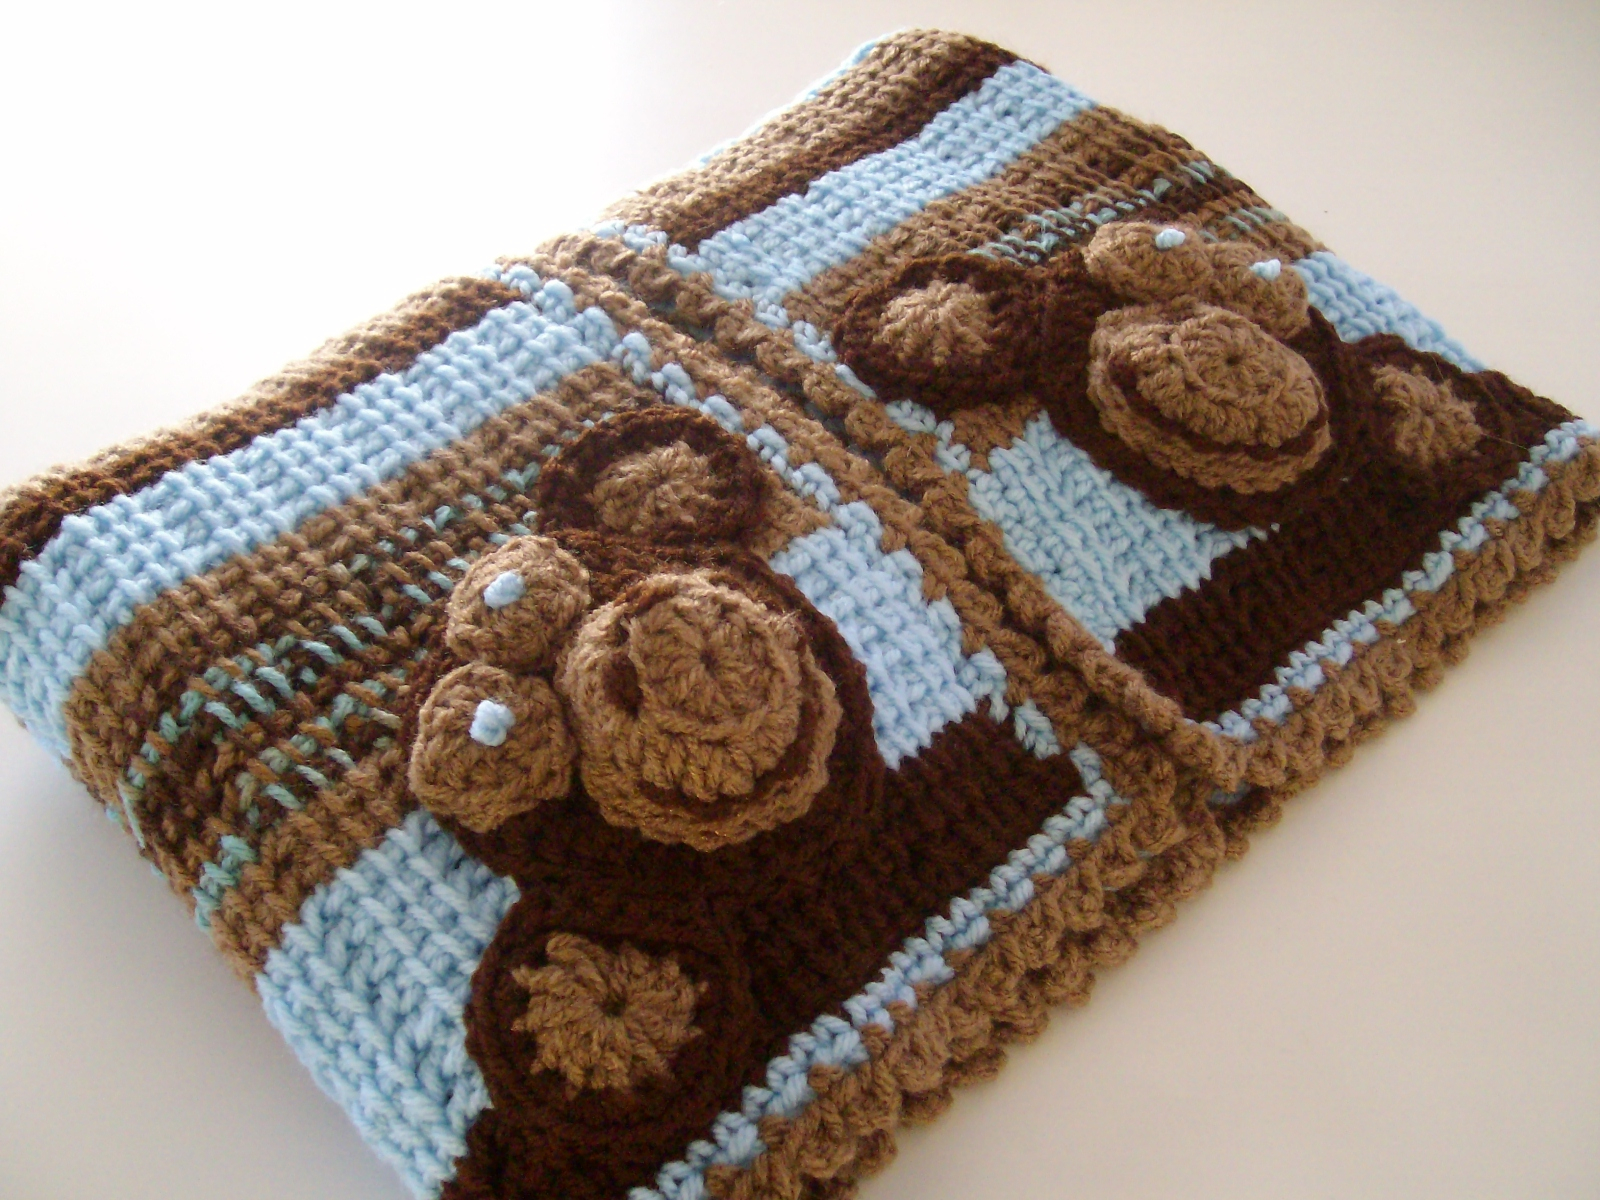 Crochet Monkey Blanket Pattern Apple Blossom Dreams Welcome A J